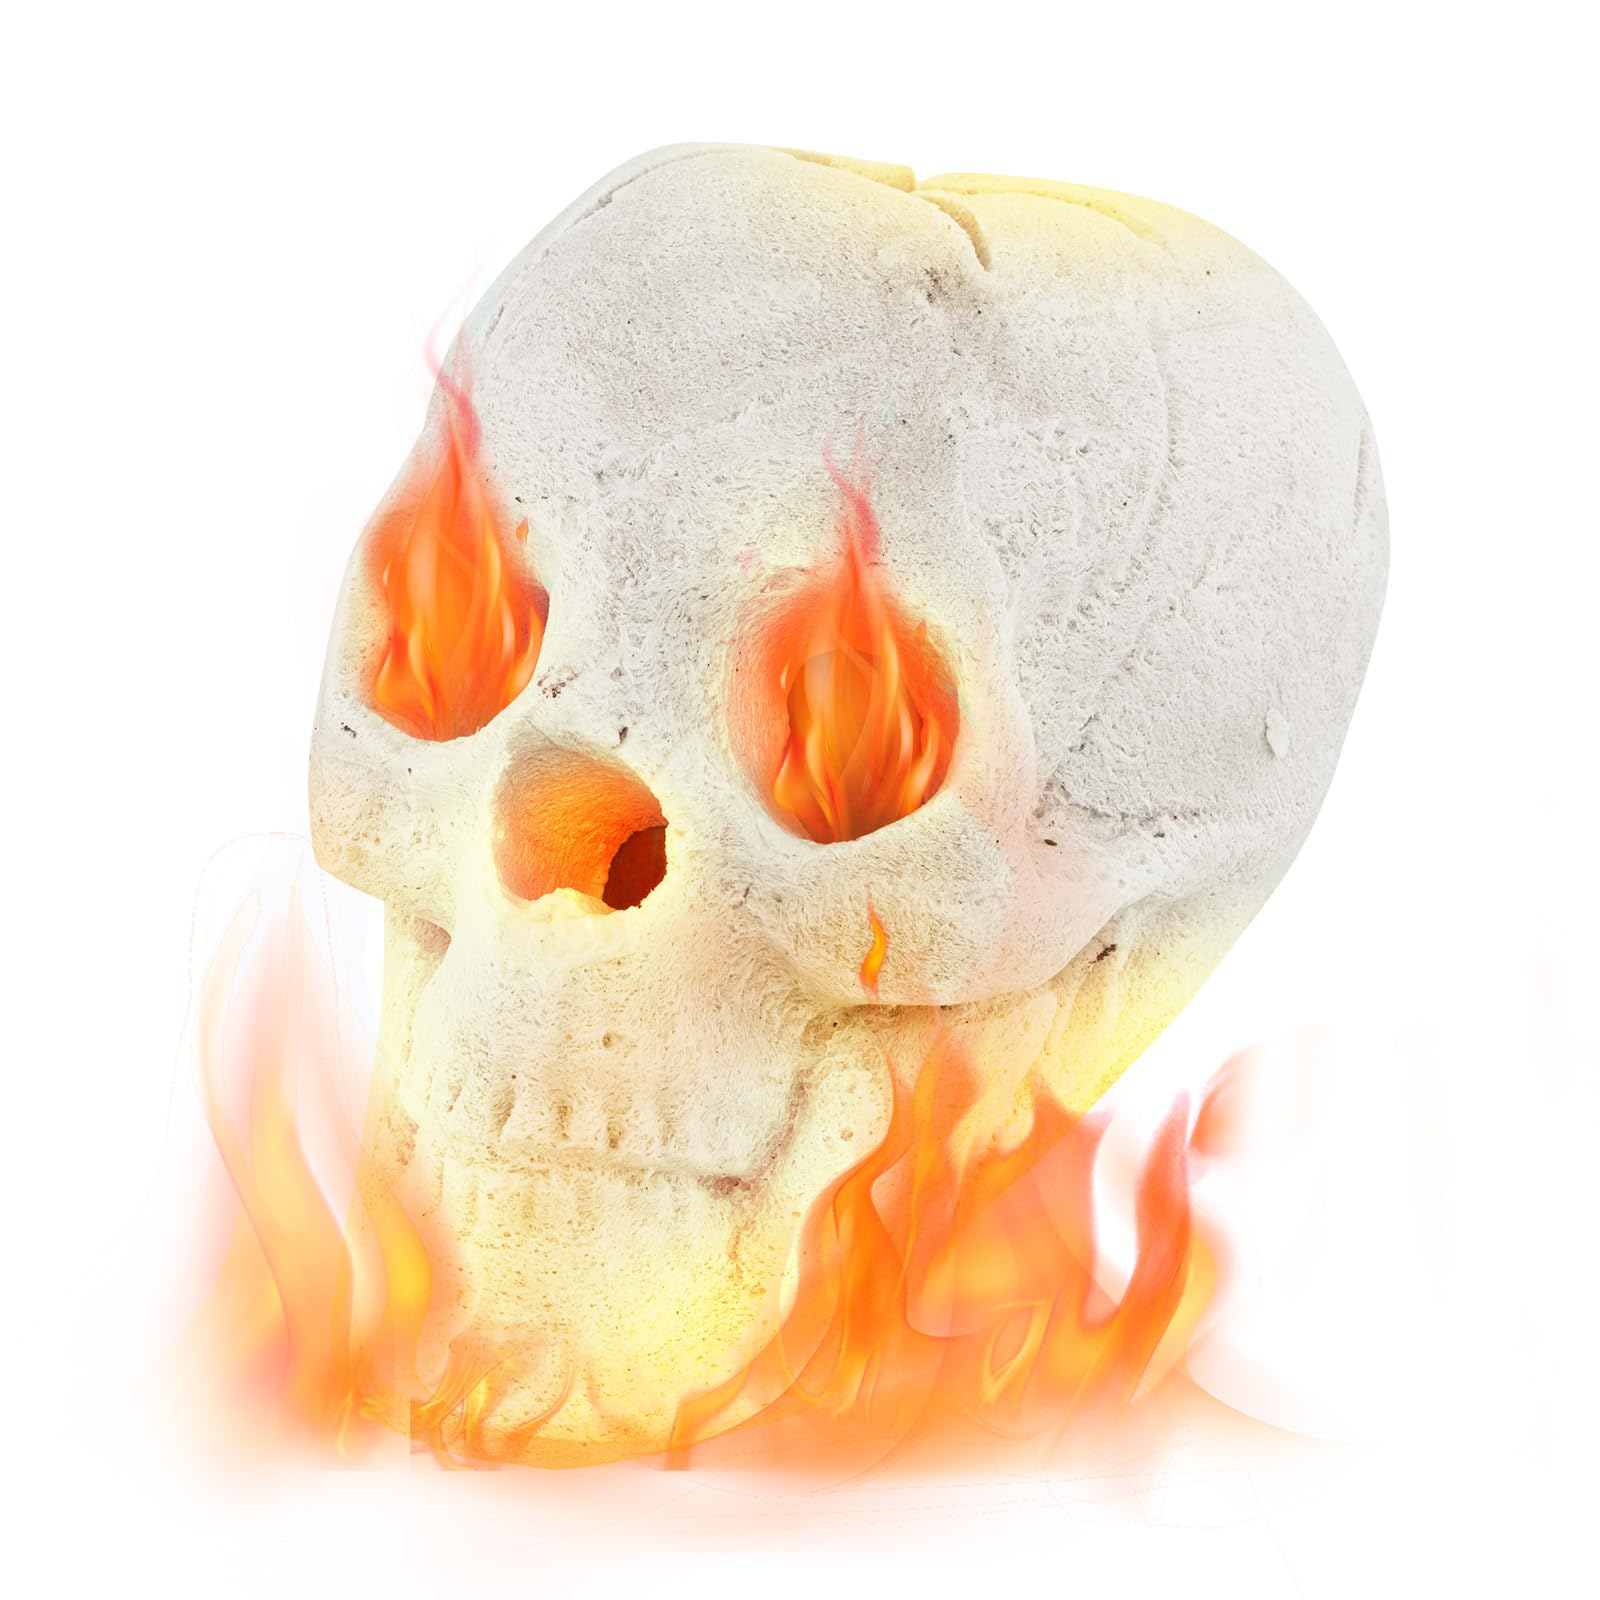 Giantex Ceramic Skulls for Fire Pit